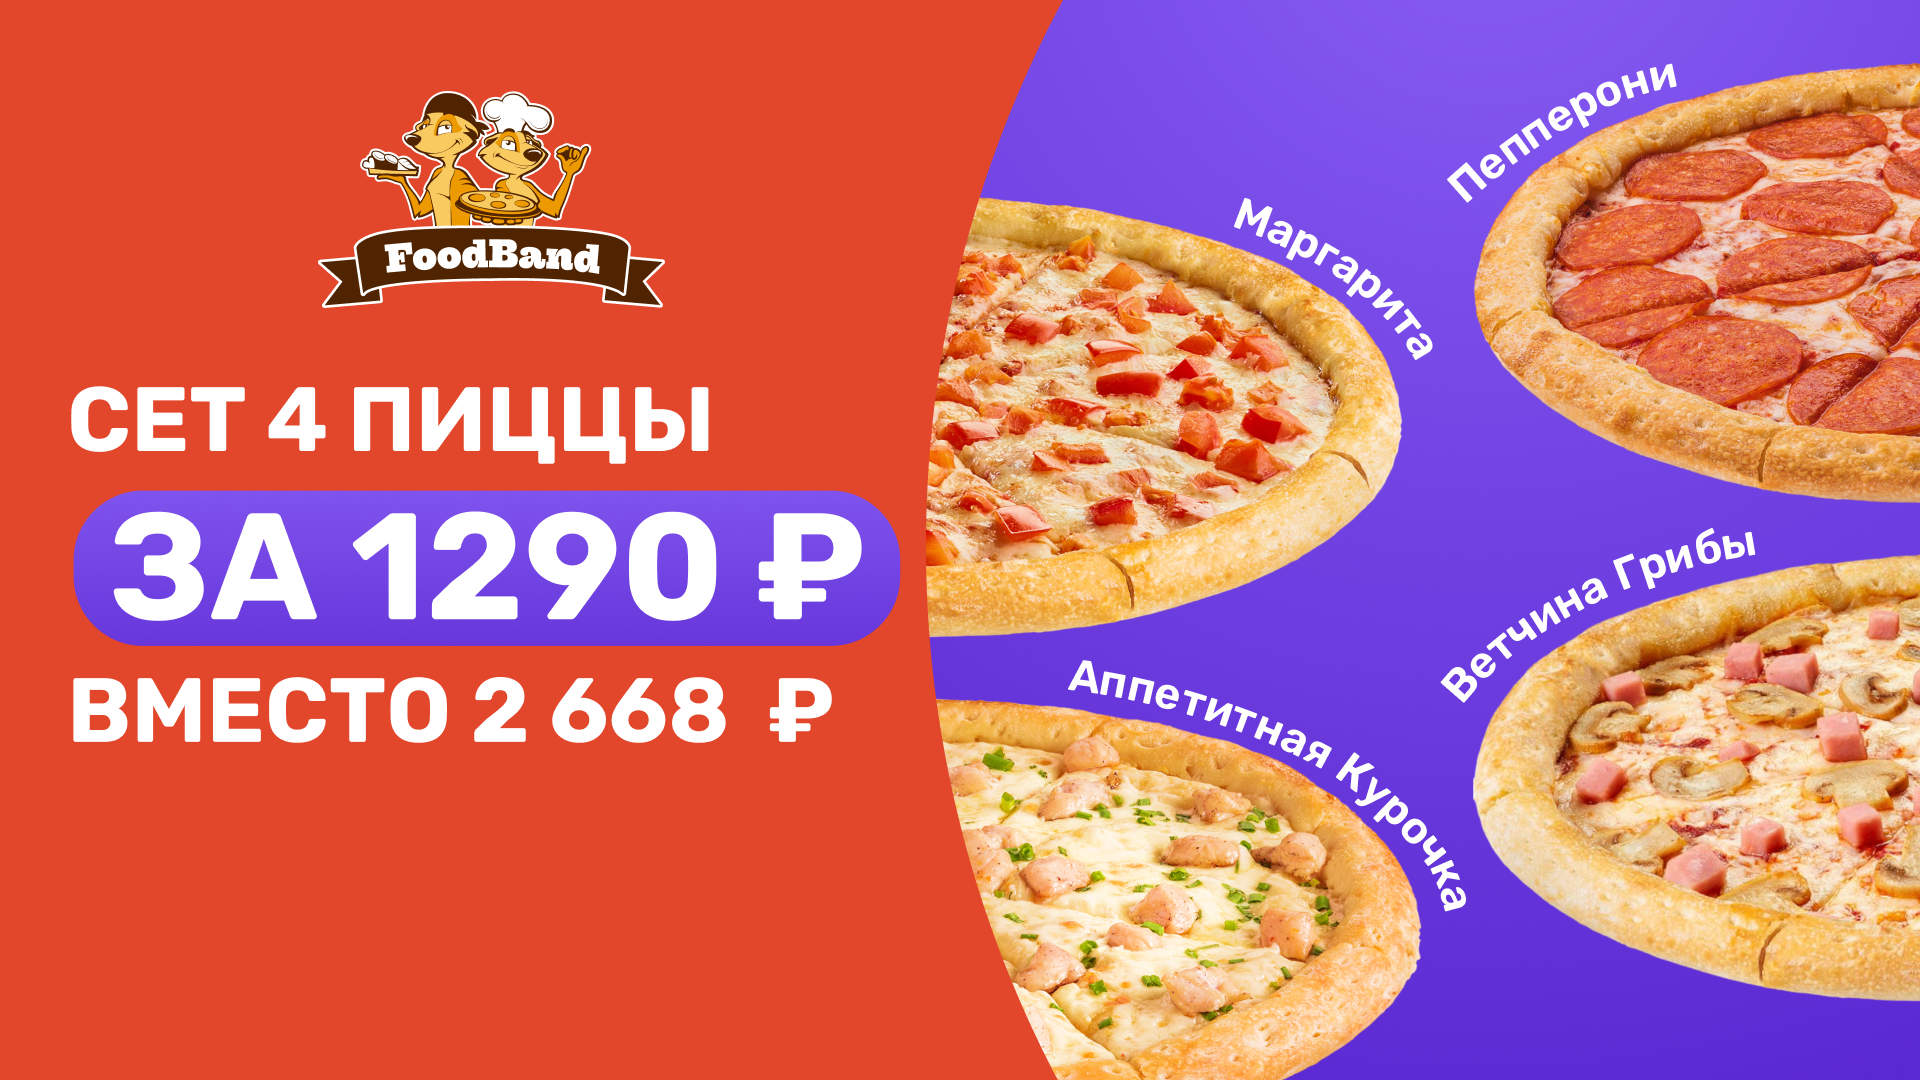 Промокод FoodBand — сет 4 пиццы за 1 290 ₽ вместо 2 668 ₽ на сайте и в приложении для всех!